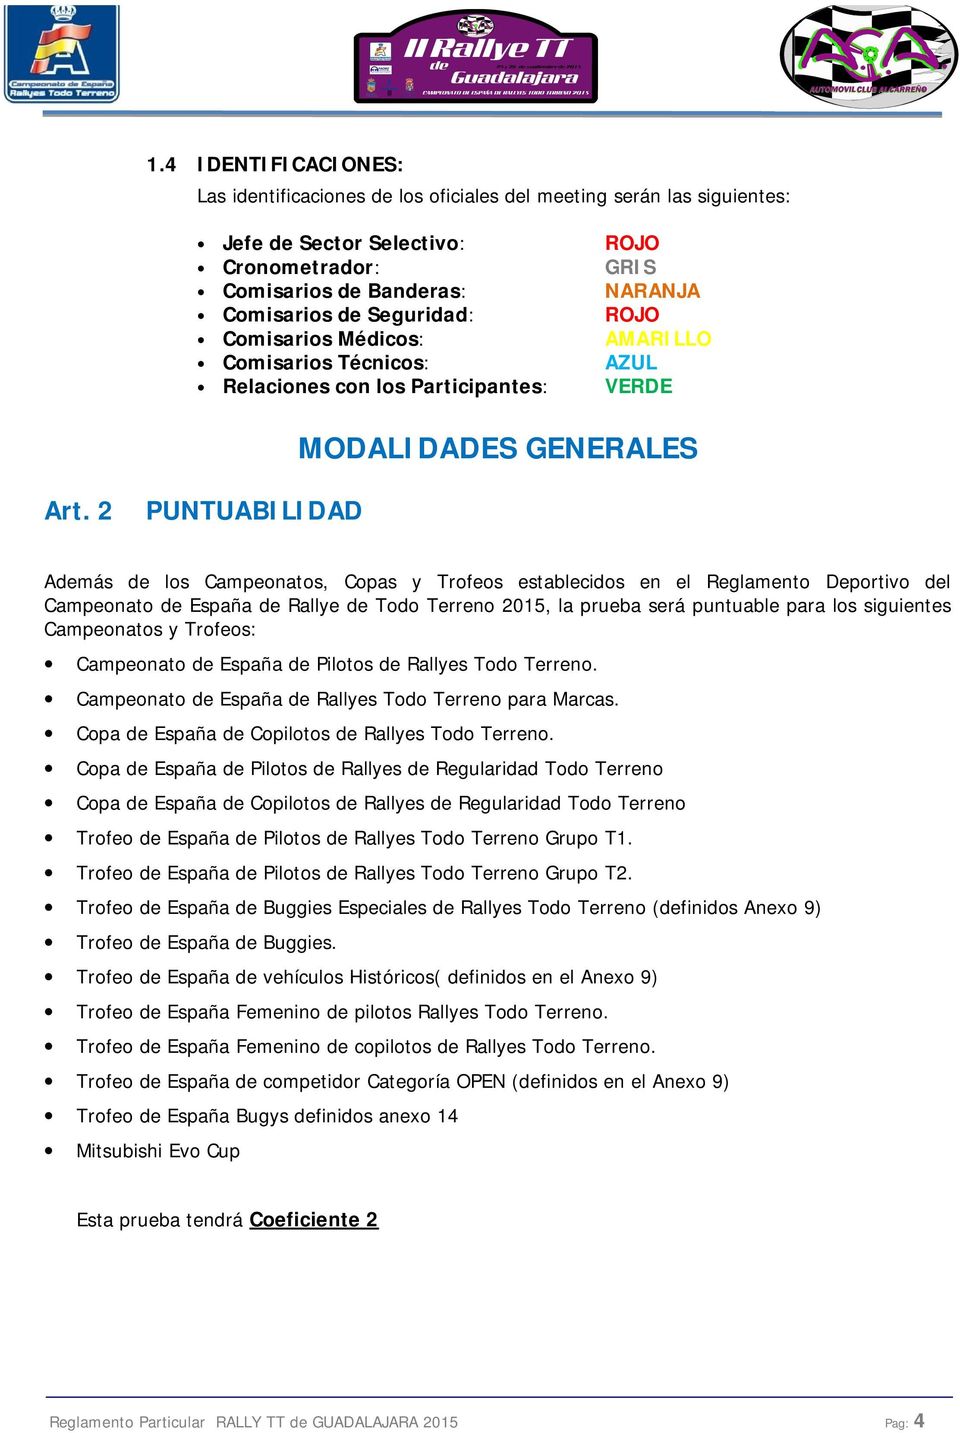 2 PUNTUABILIDAD Además de los Campeonatos, Copas y Trofeos establecidos en el Reglamento Deportivo del Campeonato de España de Rallye de Todo Terreno 2015, la prueba será puntuable para los